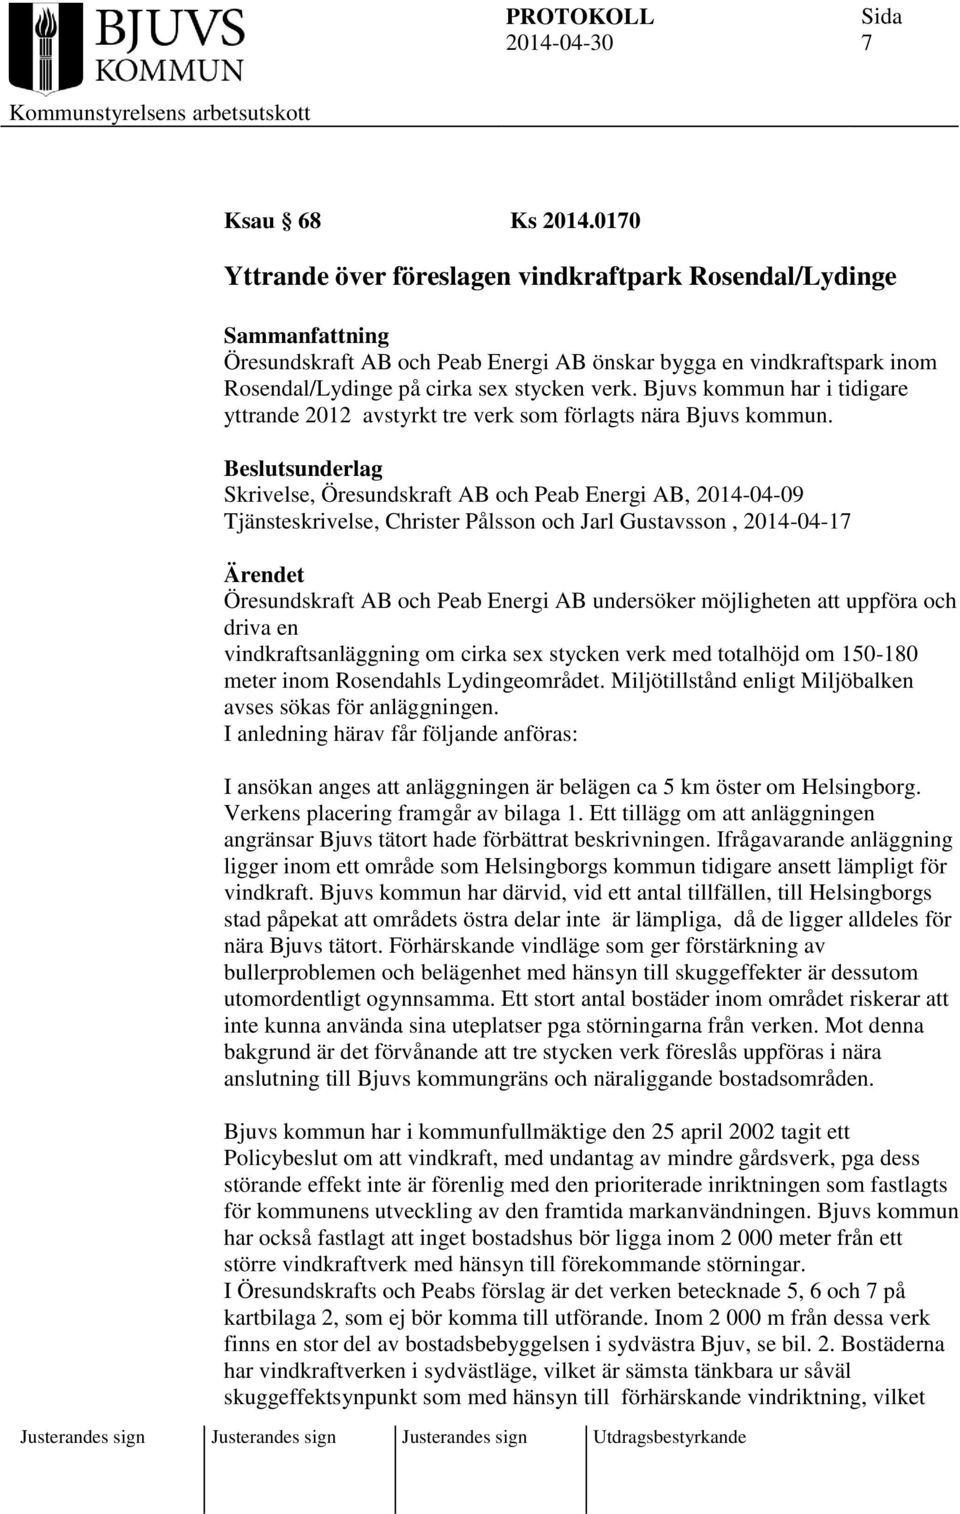 Skrivelse, Öresundskraft AB och Peab Energi AB, 2014-04-09 Tjänsteskrivelse, Christer Pålsson och Jarl Gustavsson, 2014-04-17 Ärendet Öresundskraft AB och Peab Energi AB undersöker möjligheten att